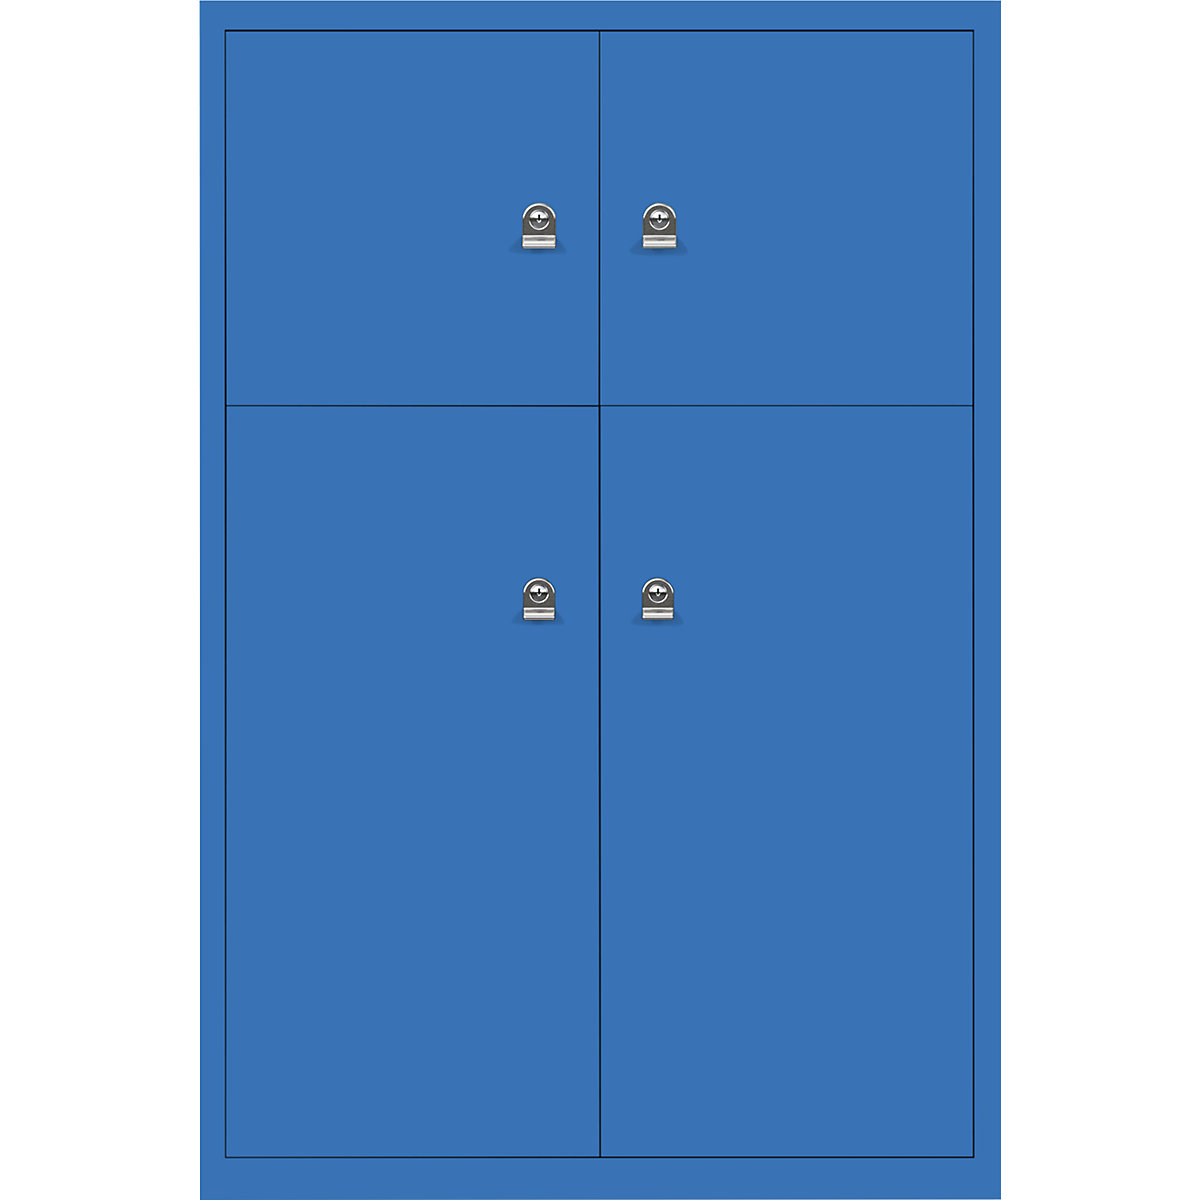 BISLEY LateralFile™ Lodge, mit 4 Schließfächern, Höhe 2 x 375 mm, 2 x 755 mm, blau